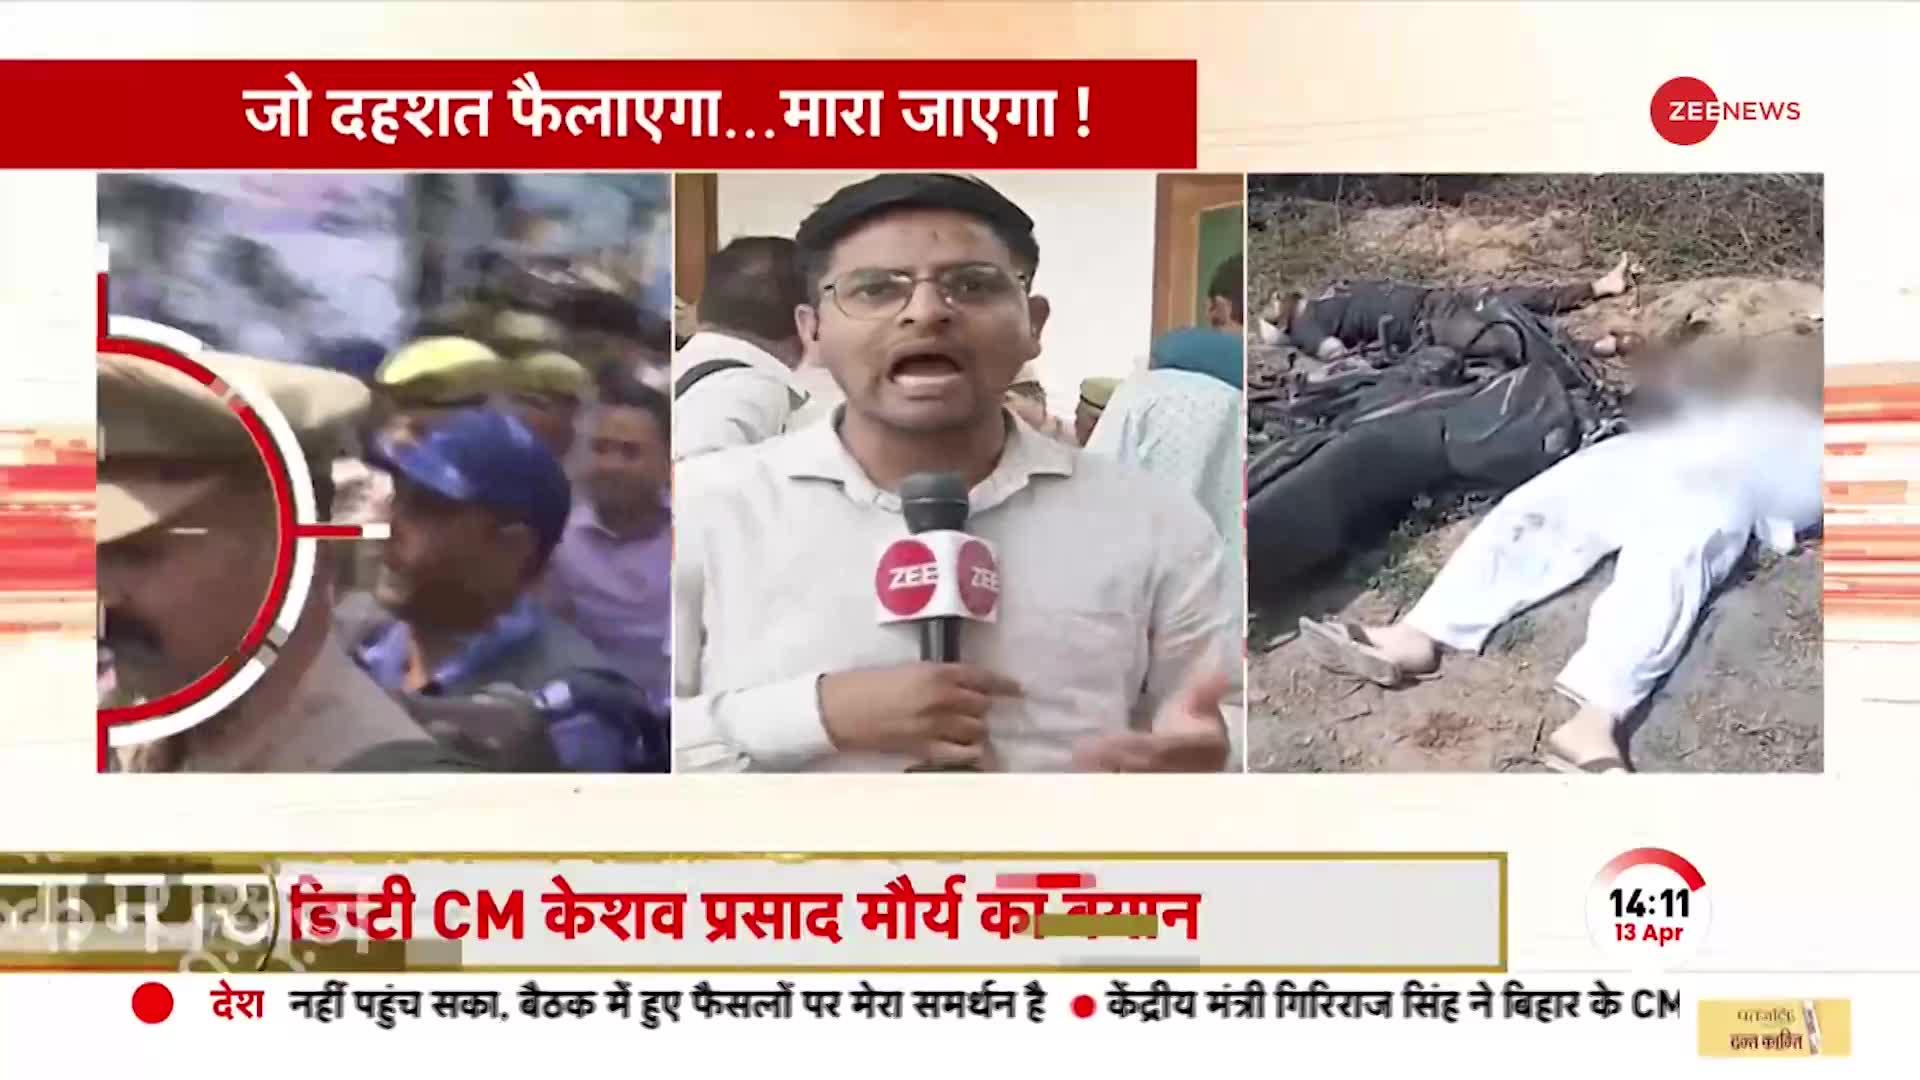 Asad Encounter: CM Yogi ने वचन निभाया..मिट्टी में मिलाया, Umesh Pal की हत्या के 49 दिन बाद इंसाफ